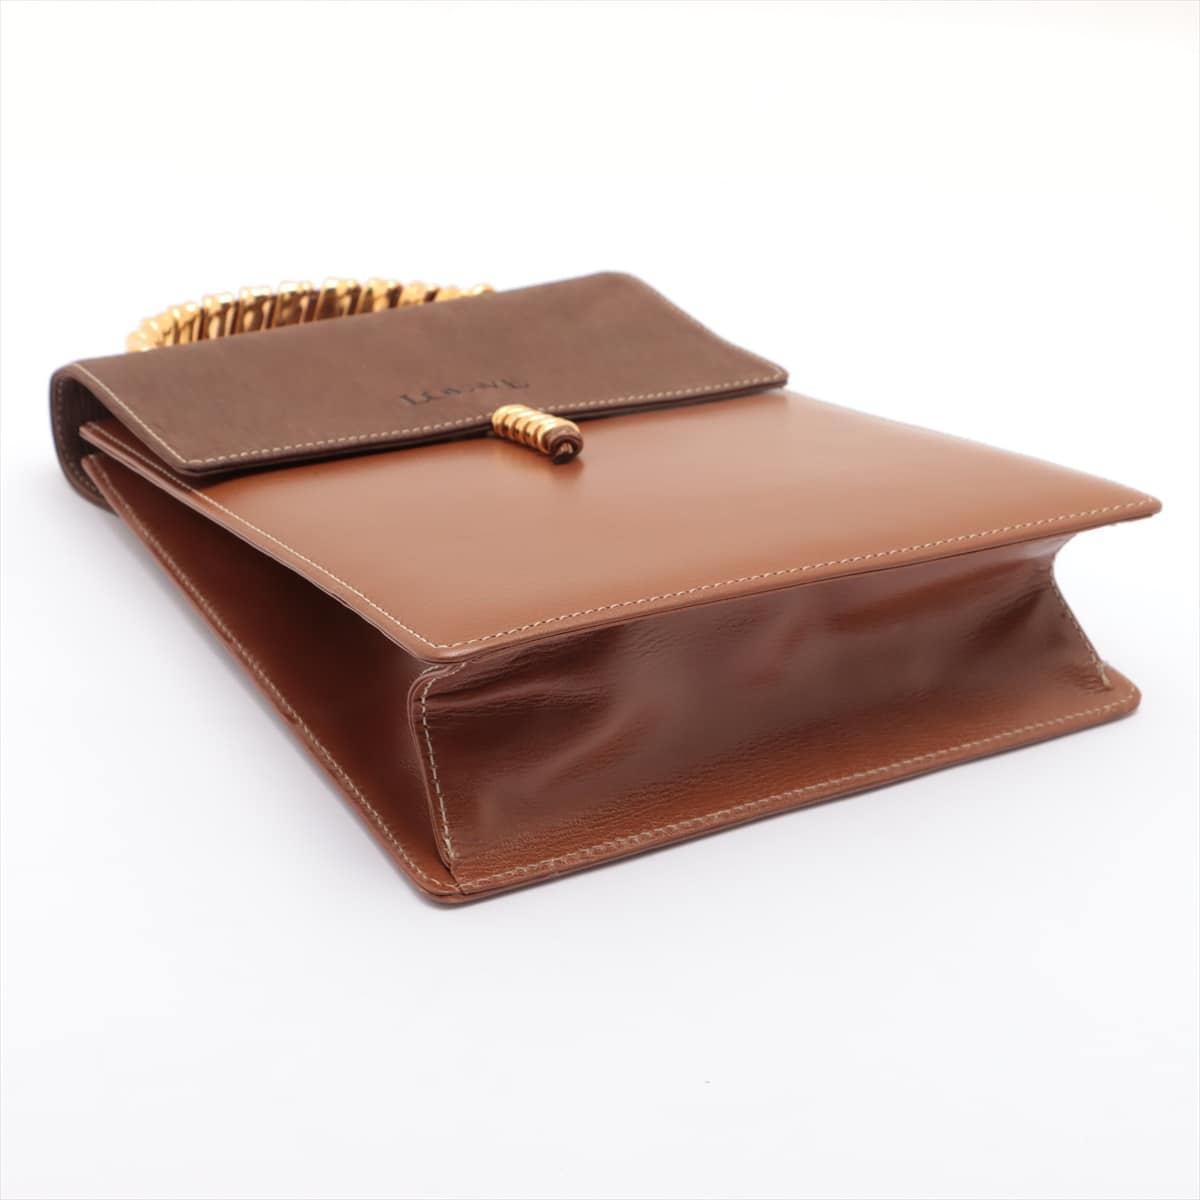 Loewe Velazquez Leather Hand bag Brown No shoulder strap